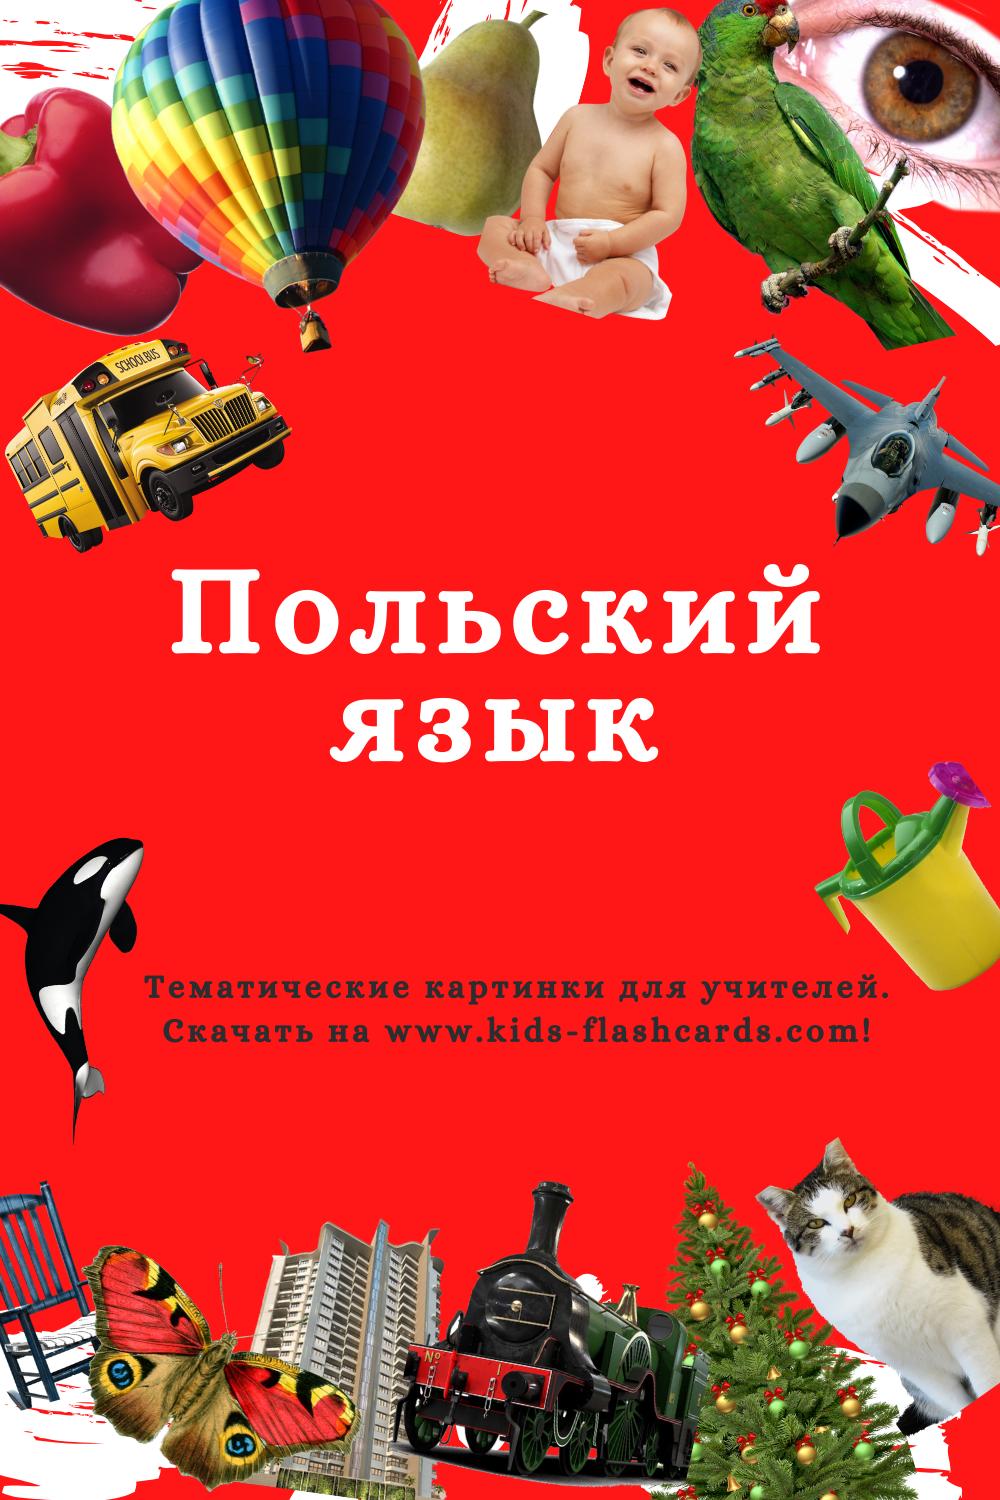 Польский язык - распечатки для детей